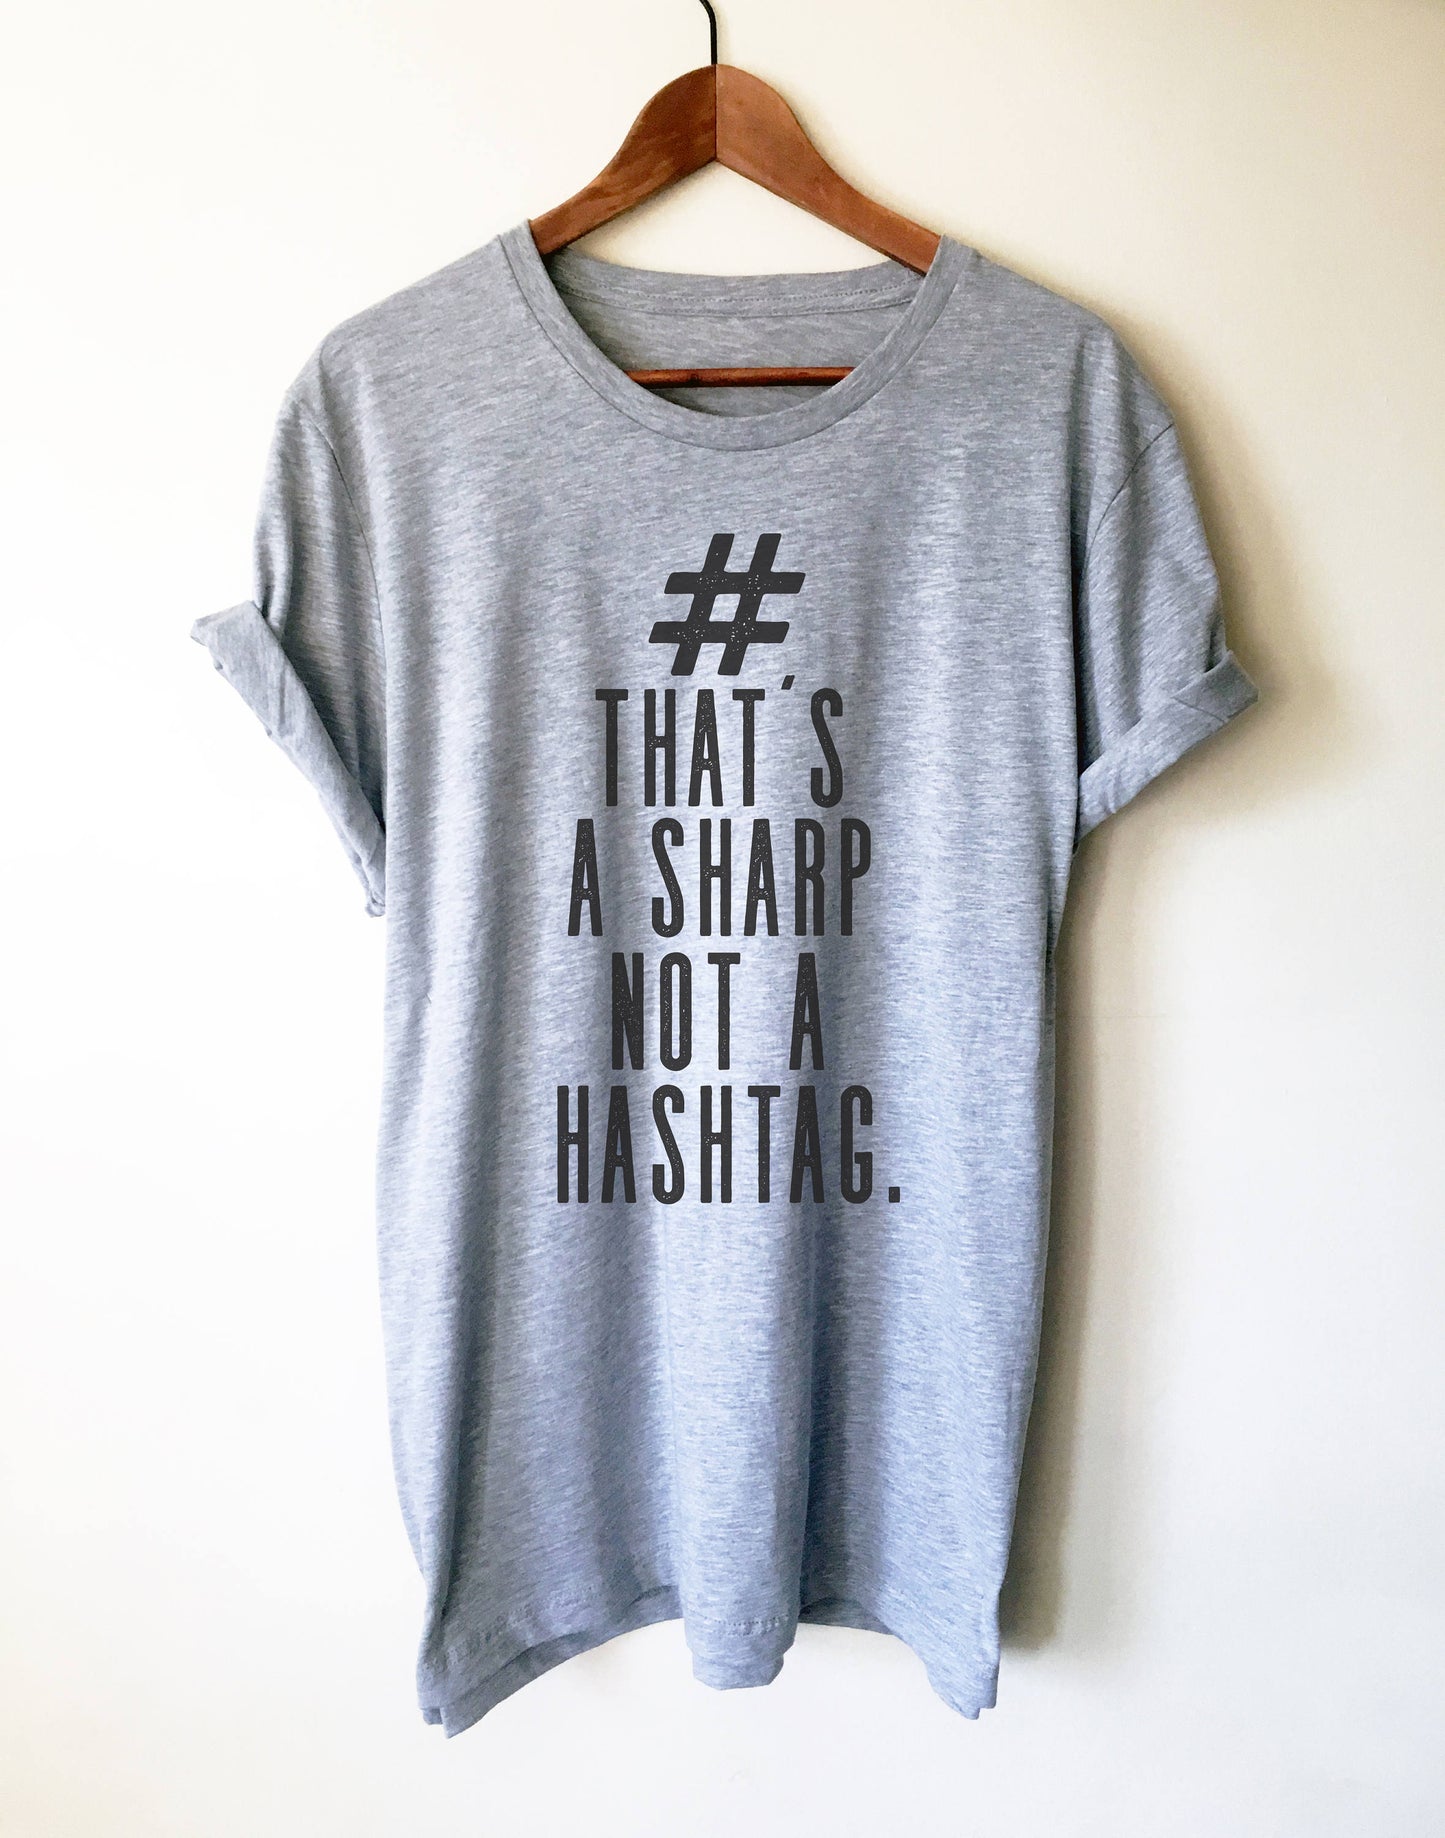 That's A Sharp Not A Hashtag Unisex Shirt - Musician shirt, Musician gift, Band shirt, Music teacher gift, Composer shirt, Music lover shirt